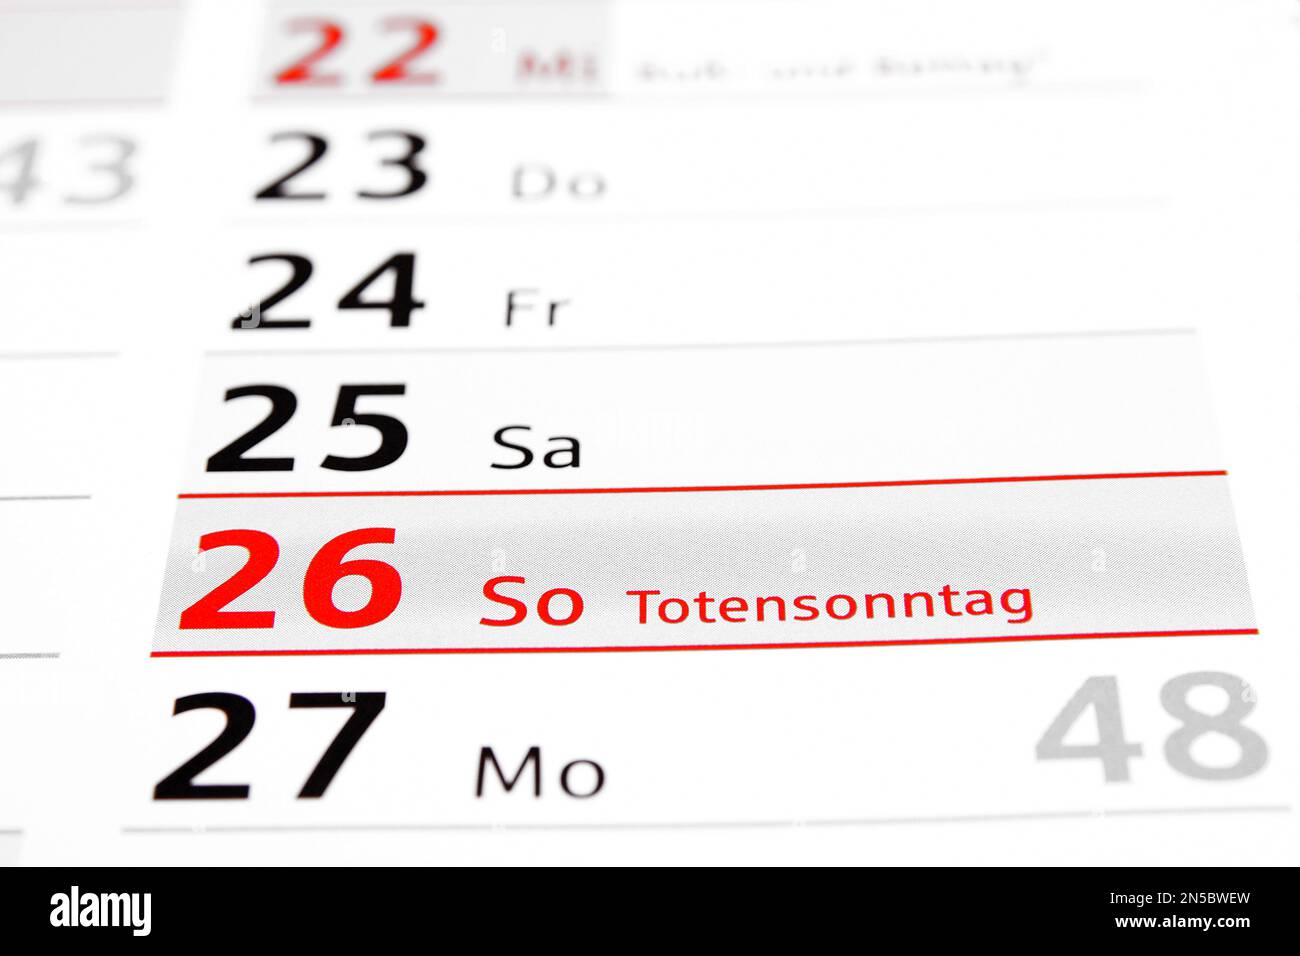 Jahreskalender 2017 auf Deutsch, sonntag zum Gedenken an die Toten Stockfoto